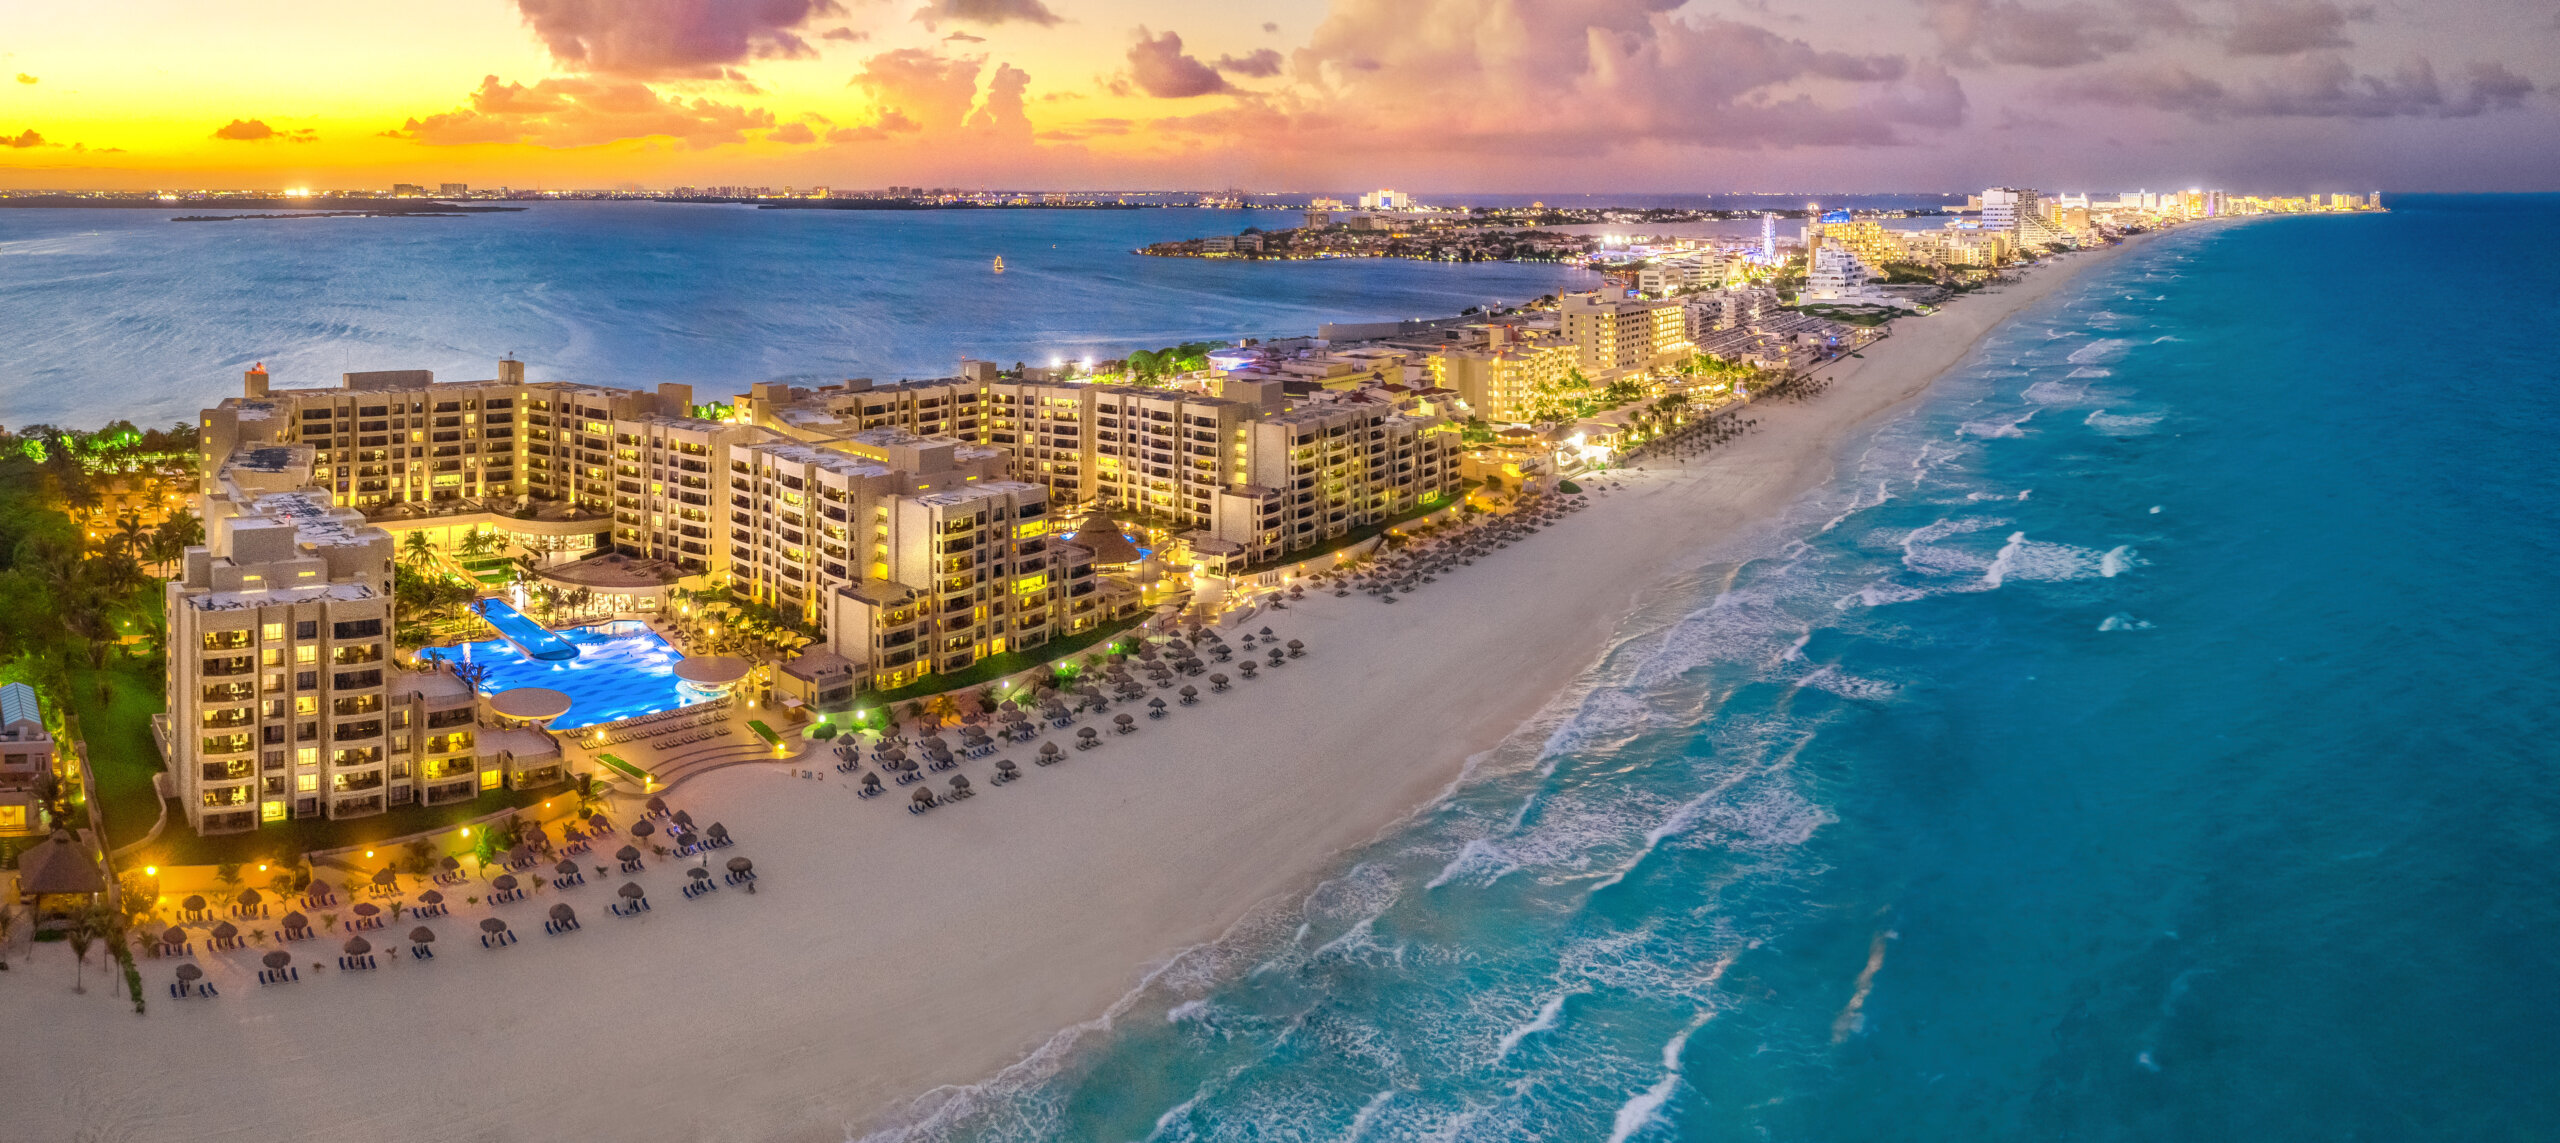 Plaża Cancun podczas zachodu słońca